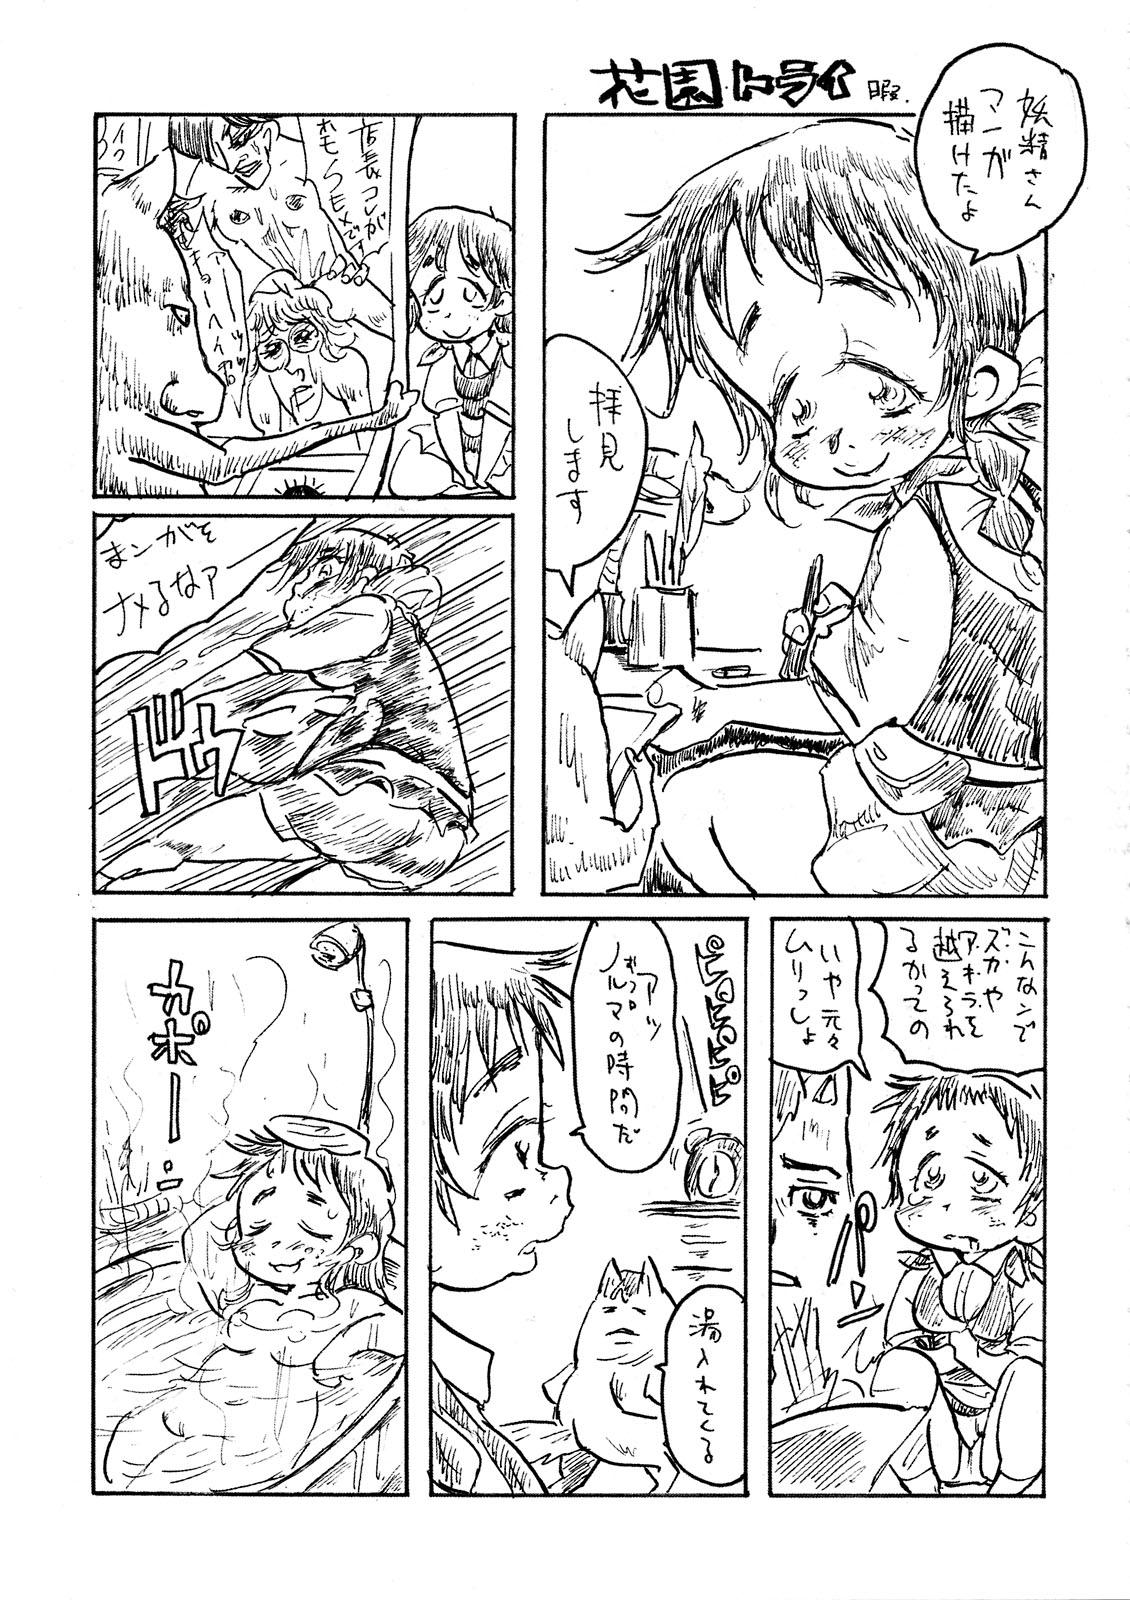 Police Gabyonuno to Uchi Uchi Keyaki no Suki Kaki Bon 08' Fuyu Michi naru pants o Motomete - Megaman Prostituta - Page 11